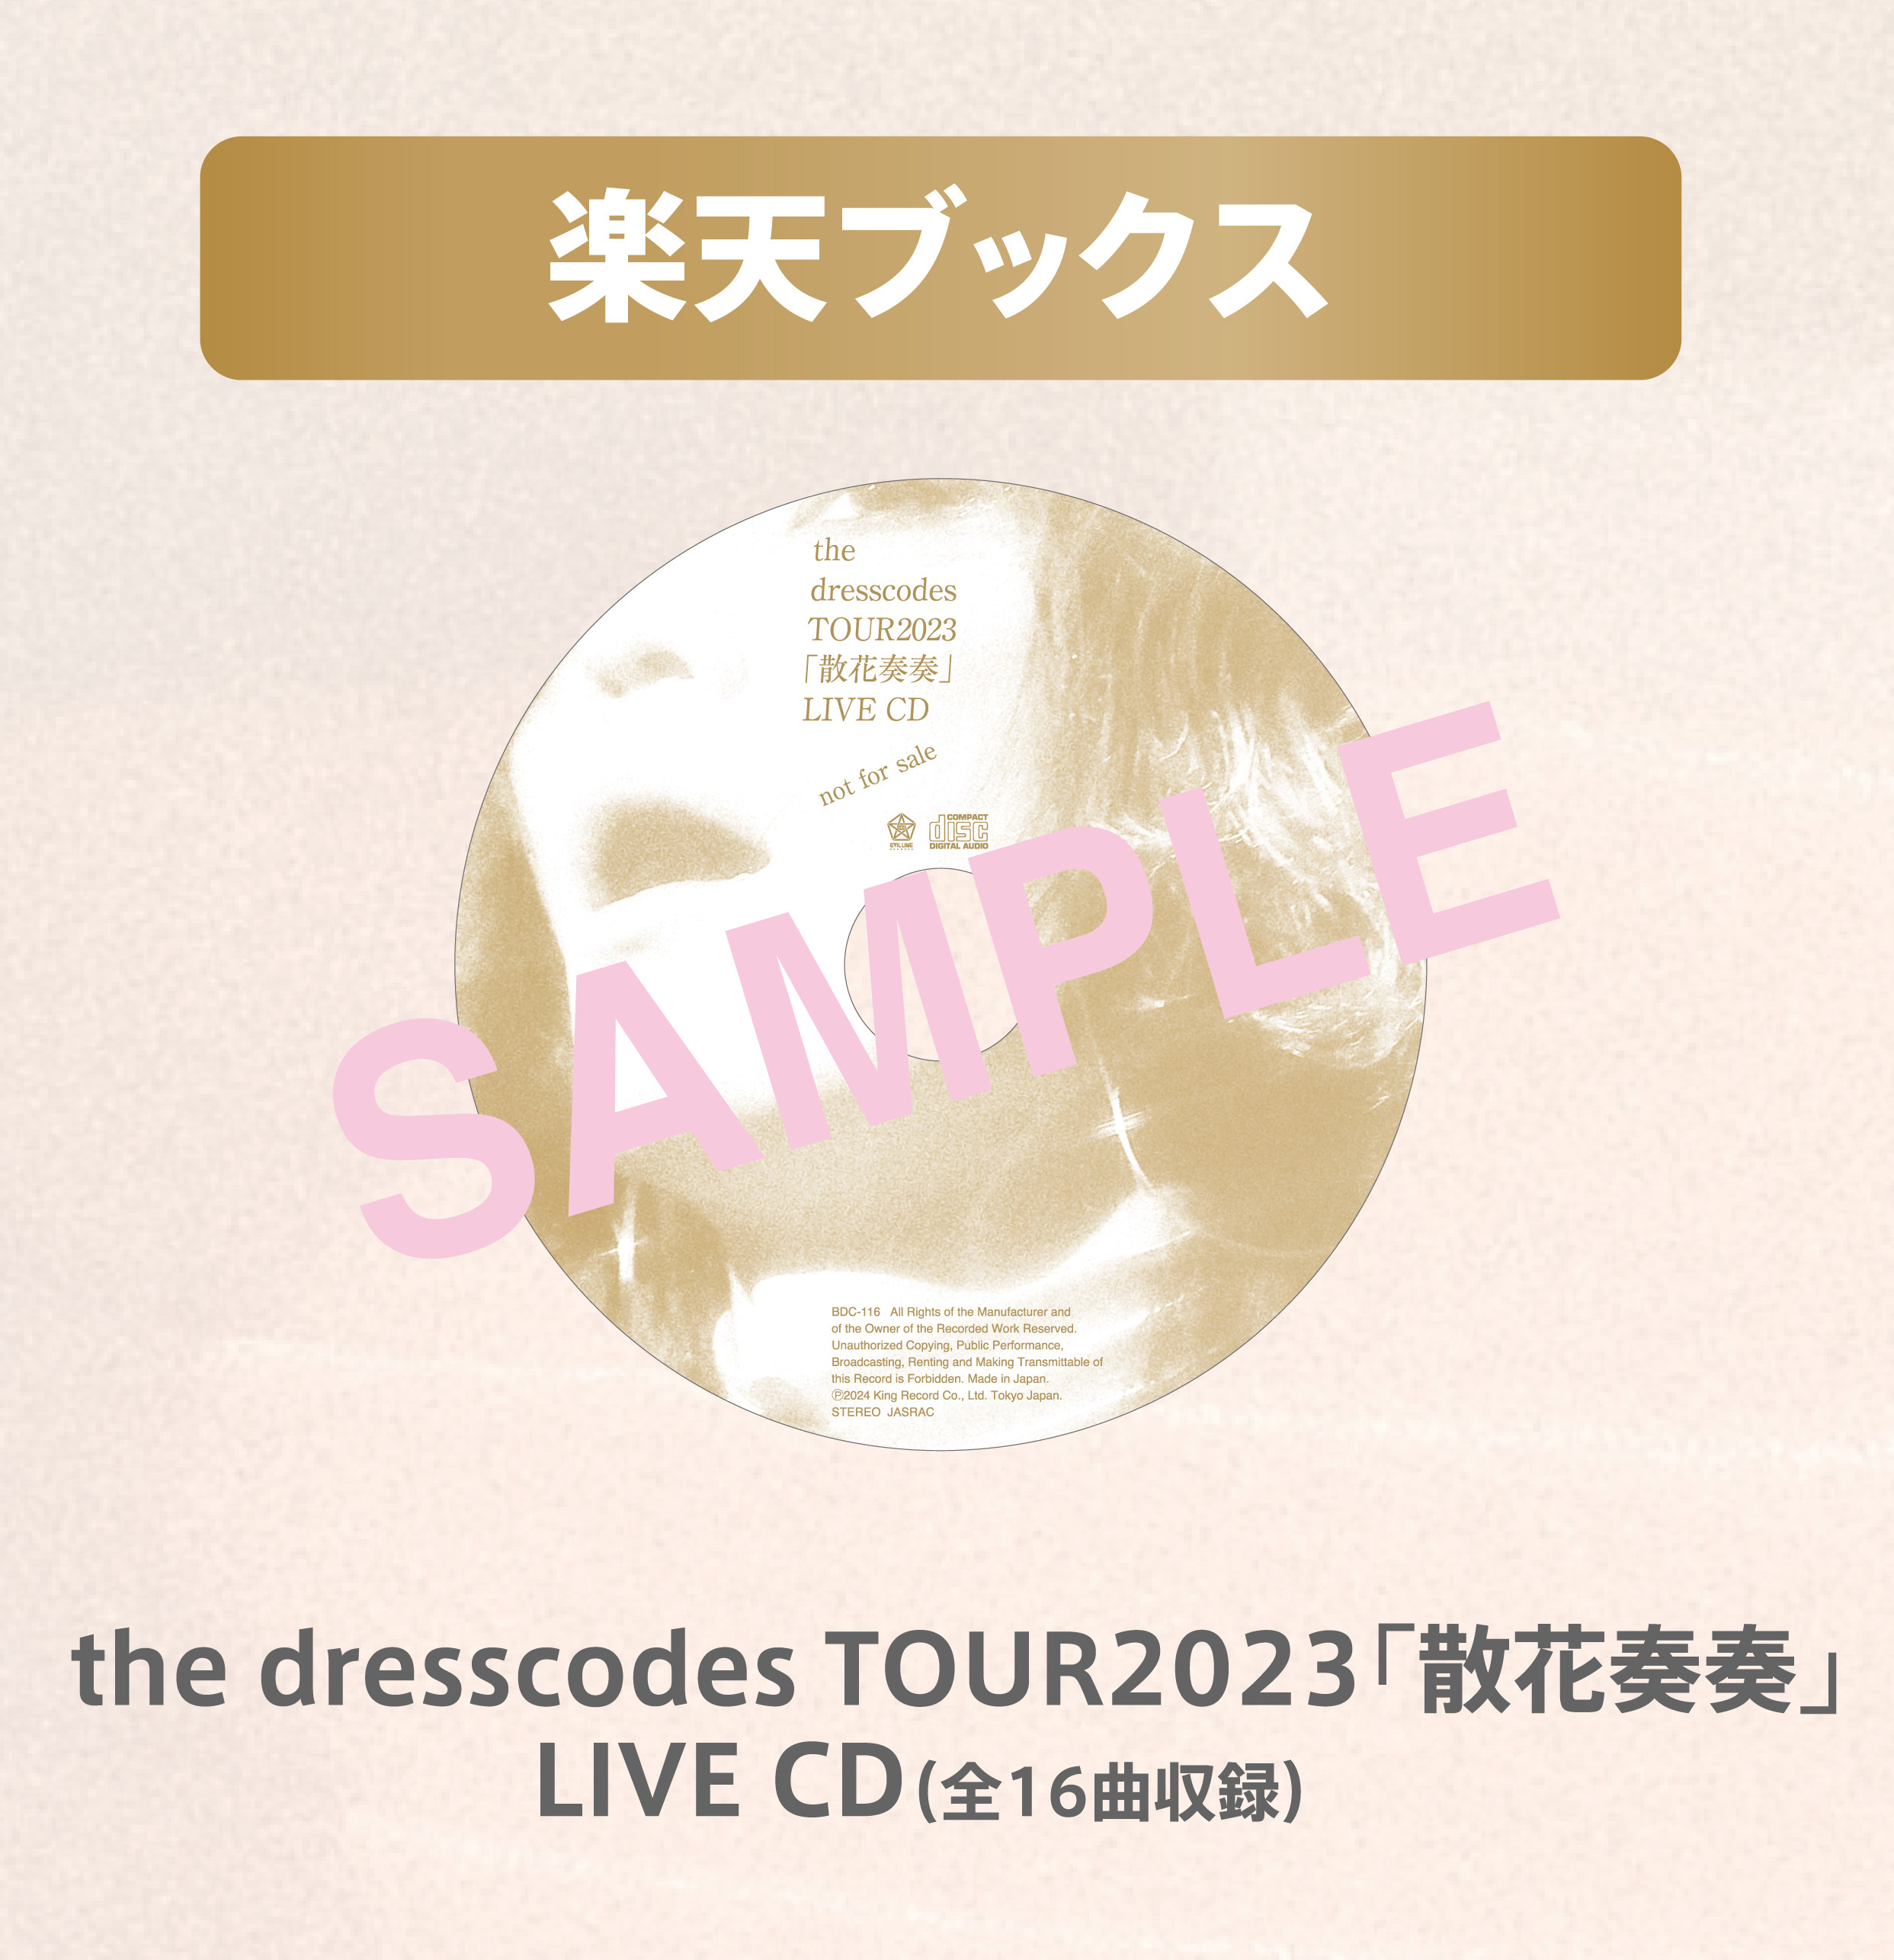 楽天ブックス: 【楽天ブックス限定先着特典】the dresscodes TOUR2023 